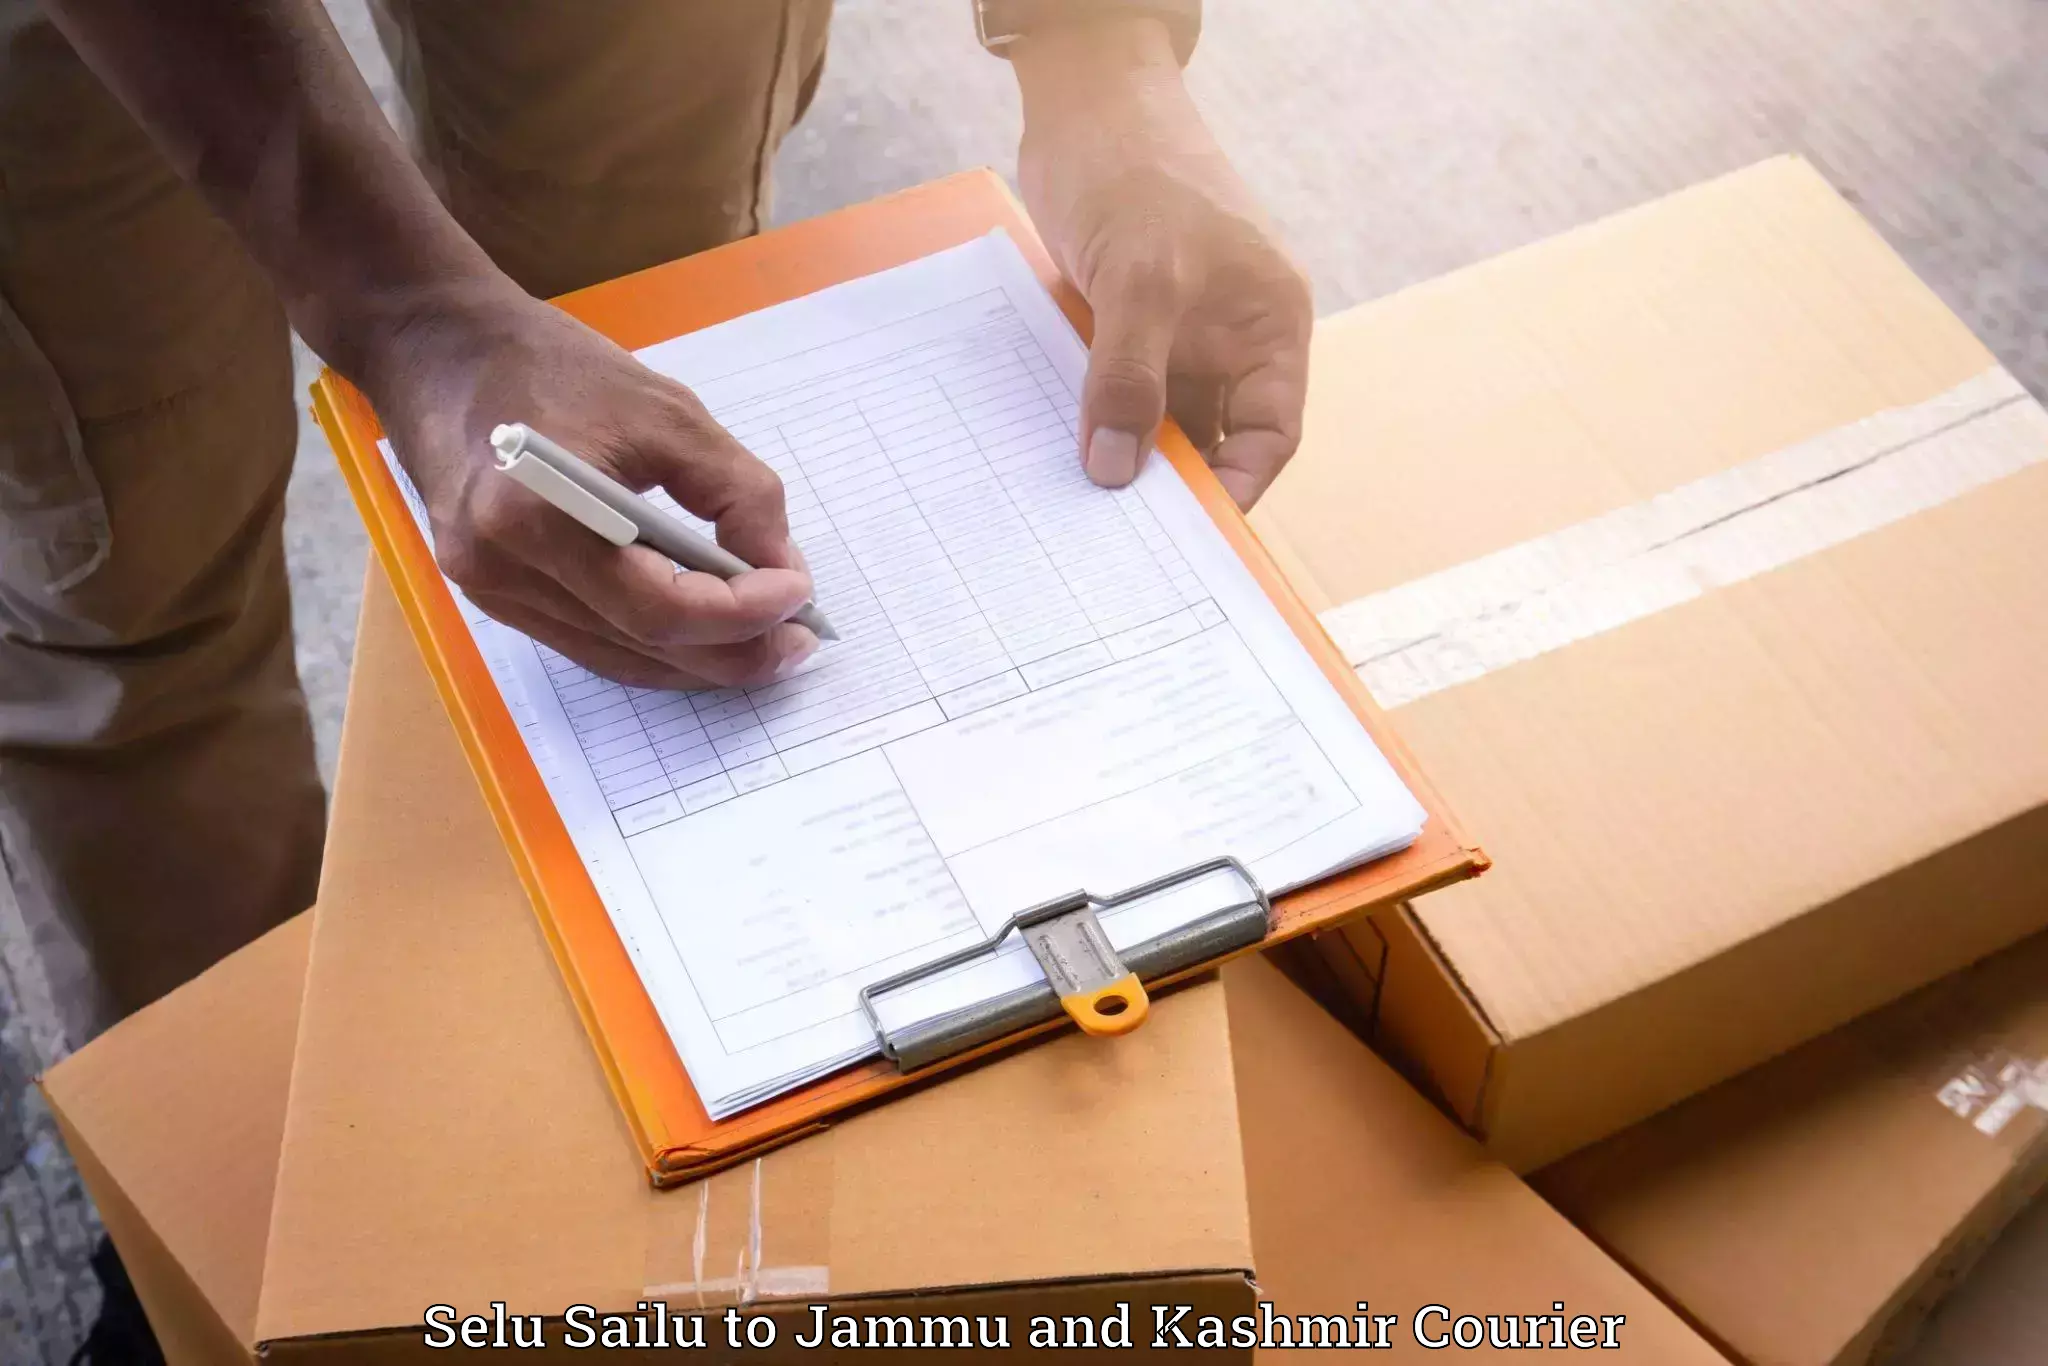 Furniture moving specialists Selu Sailu to Srinagar Kashmir